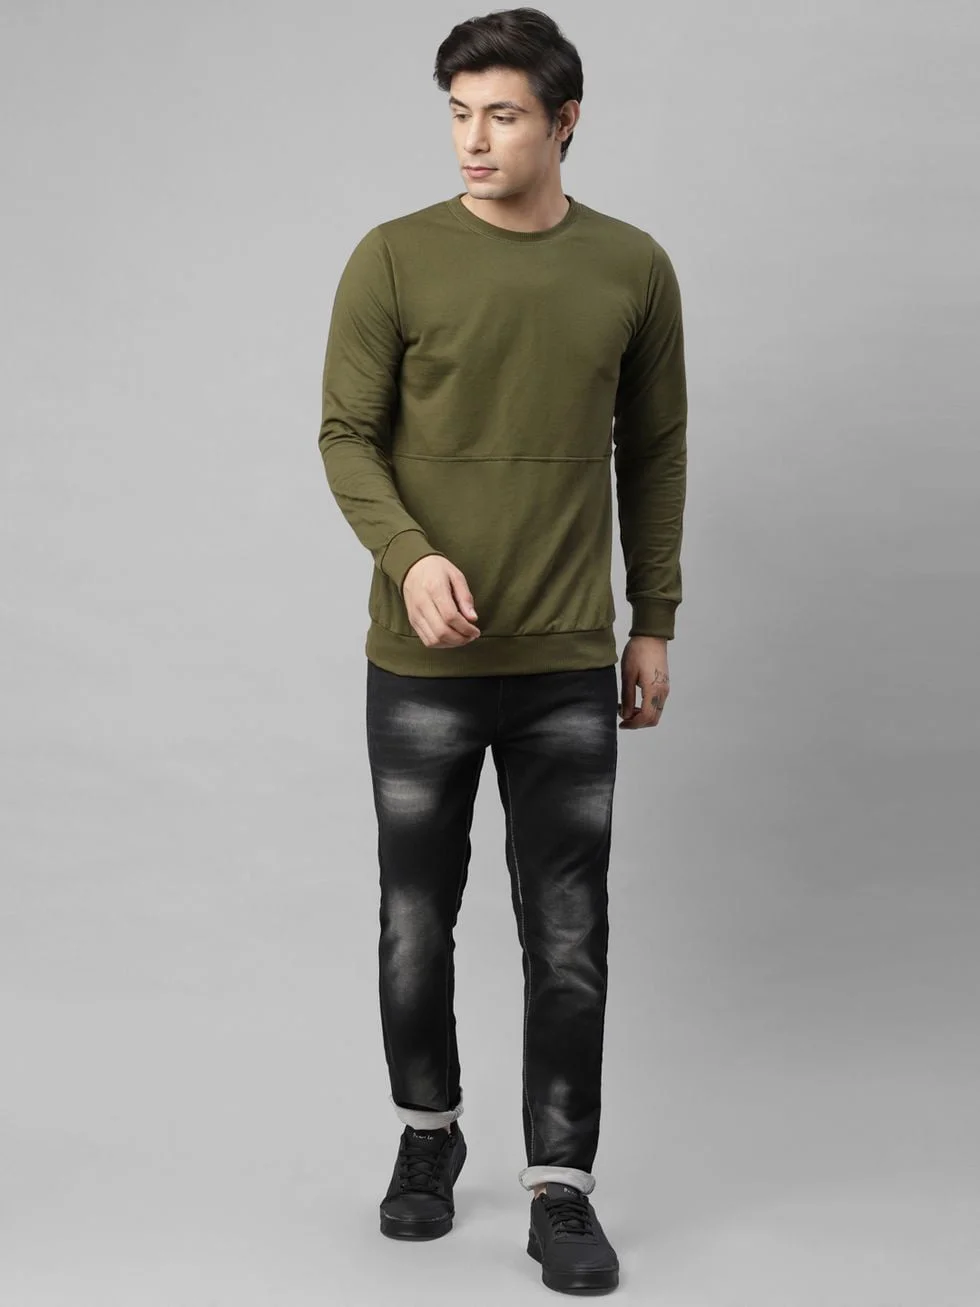 Rigo Men's Cut & Sew Terry Round Neck Sweatshirt (Olive Green, XL)